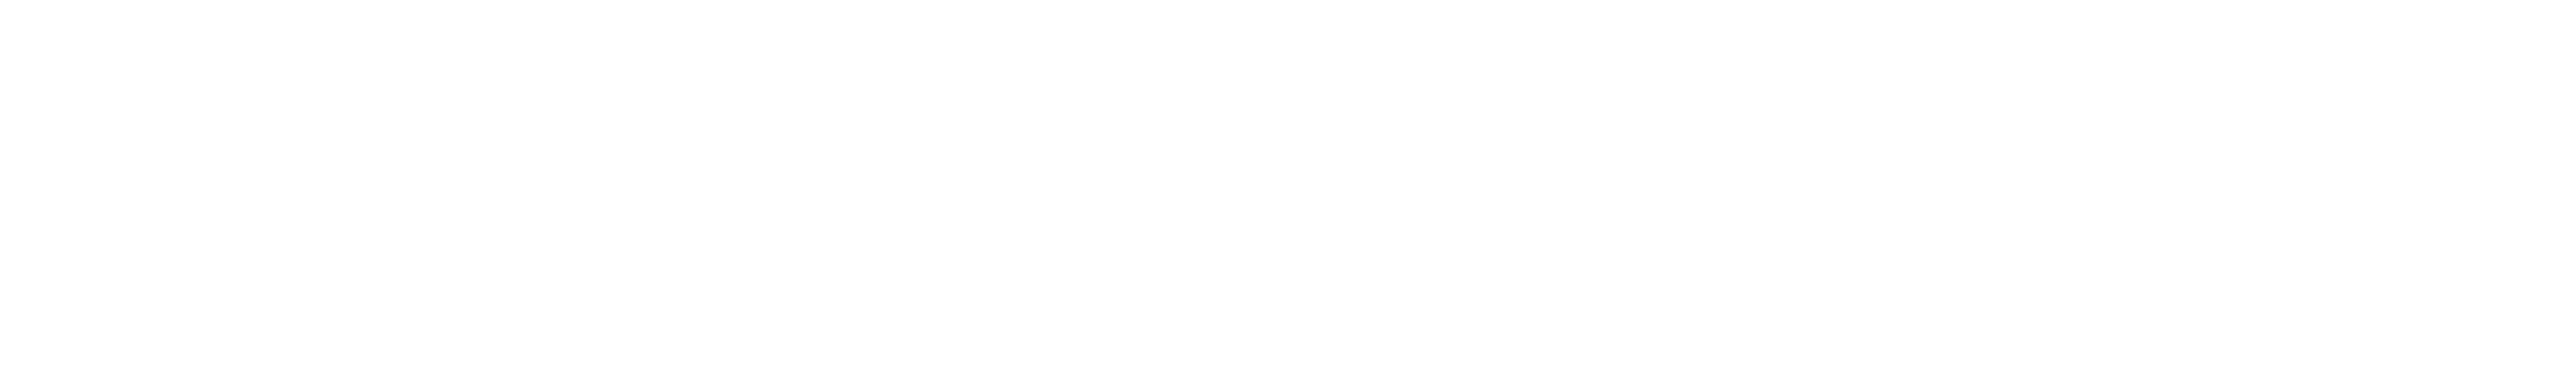 Stress-free Logo in white